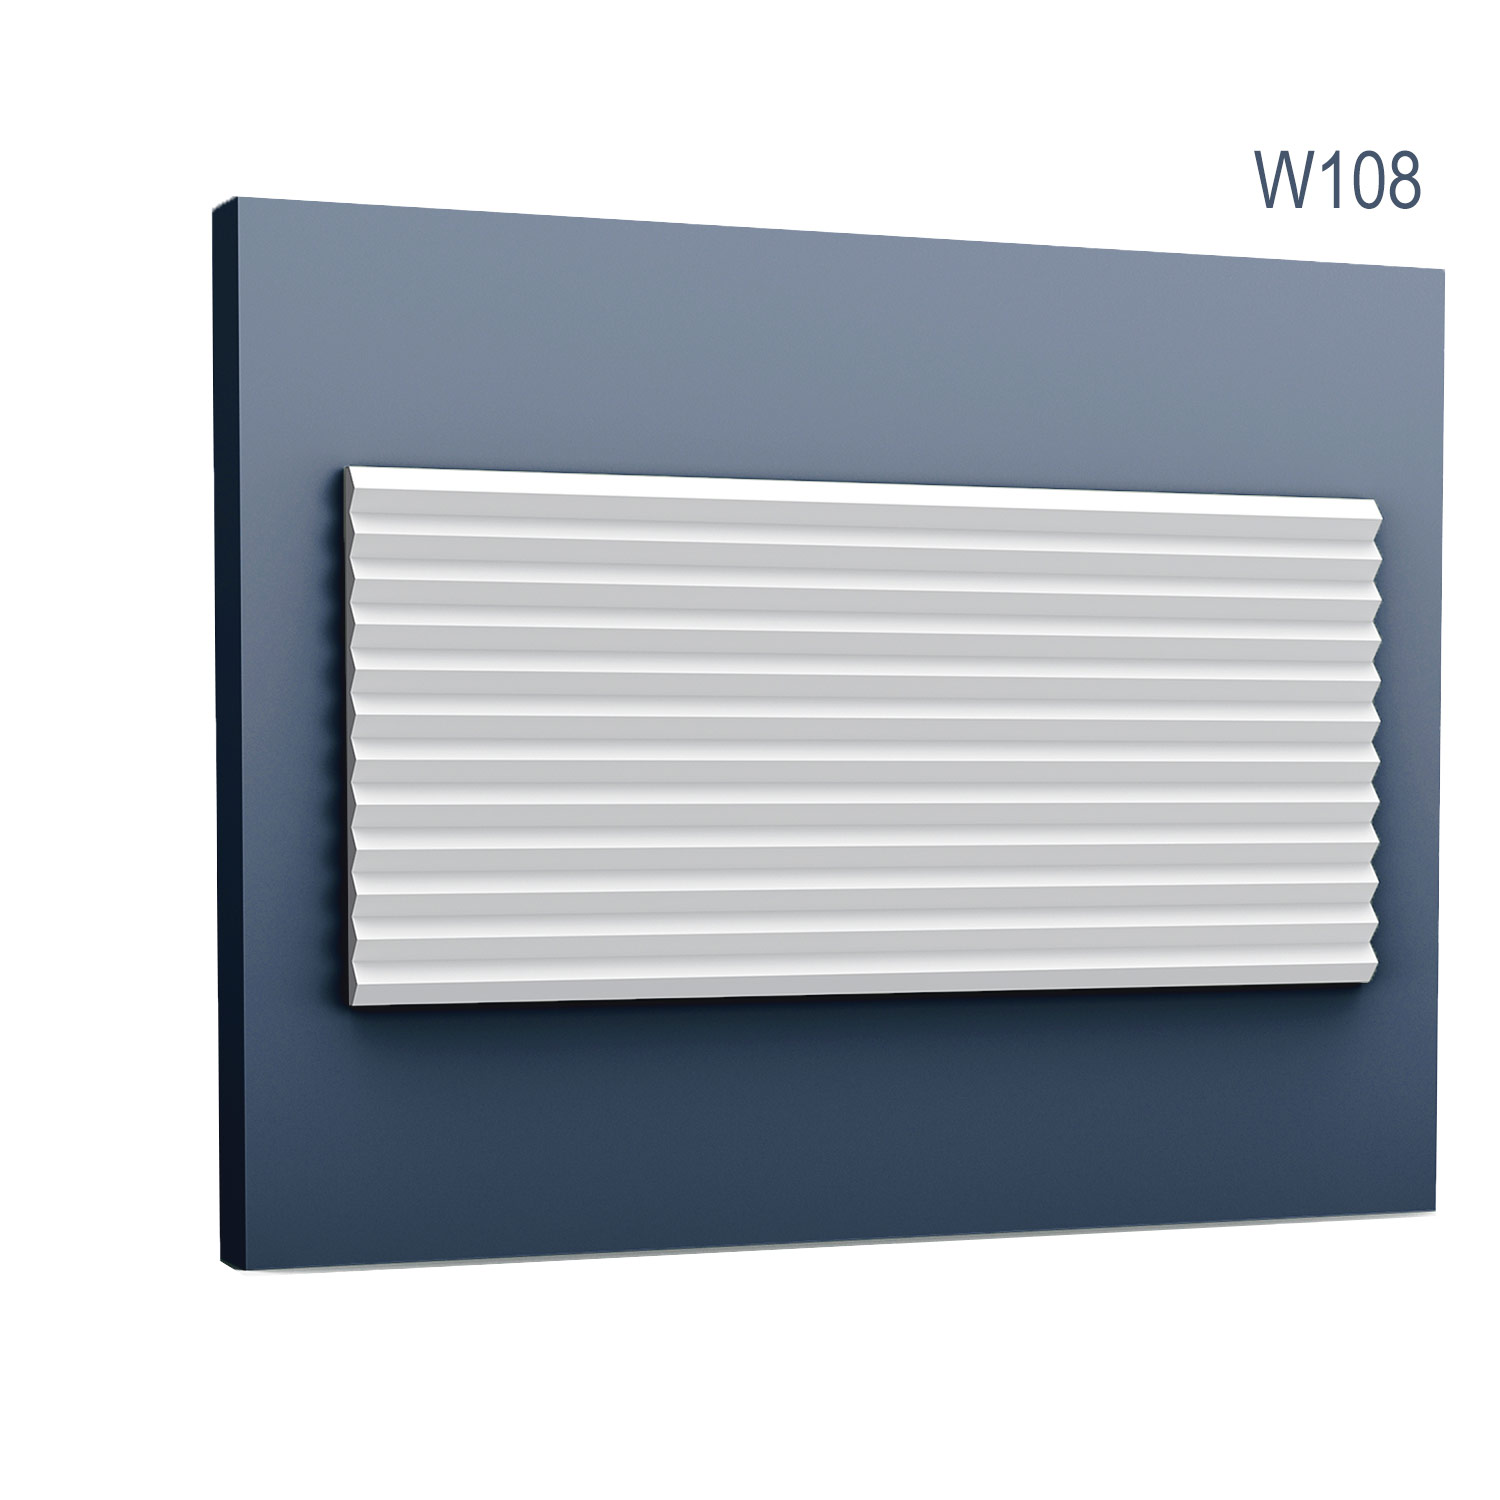 Panel Modern W108, Dimensiuni: 200 X 25 X 1.8 cm, Orac Decor